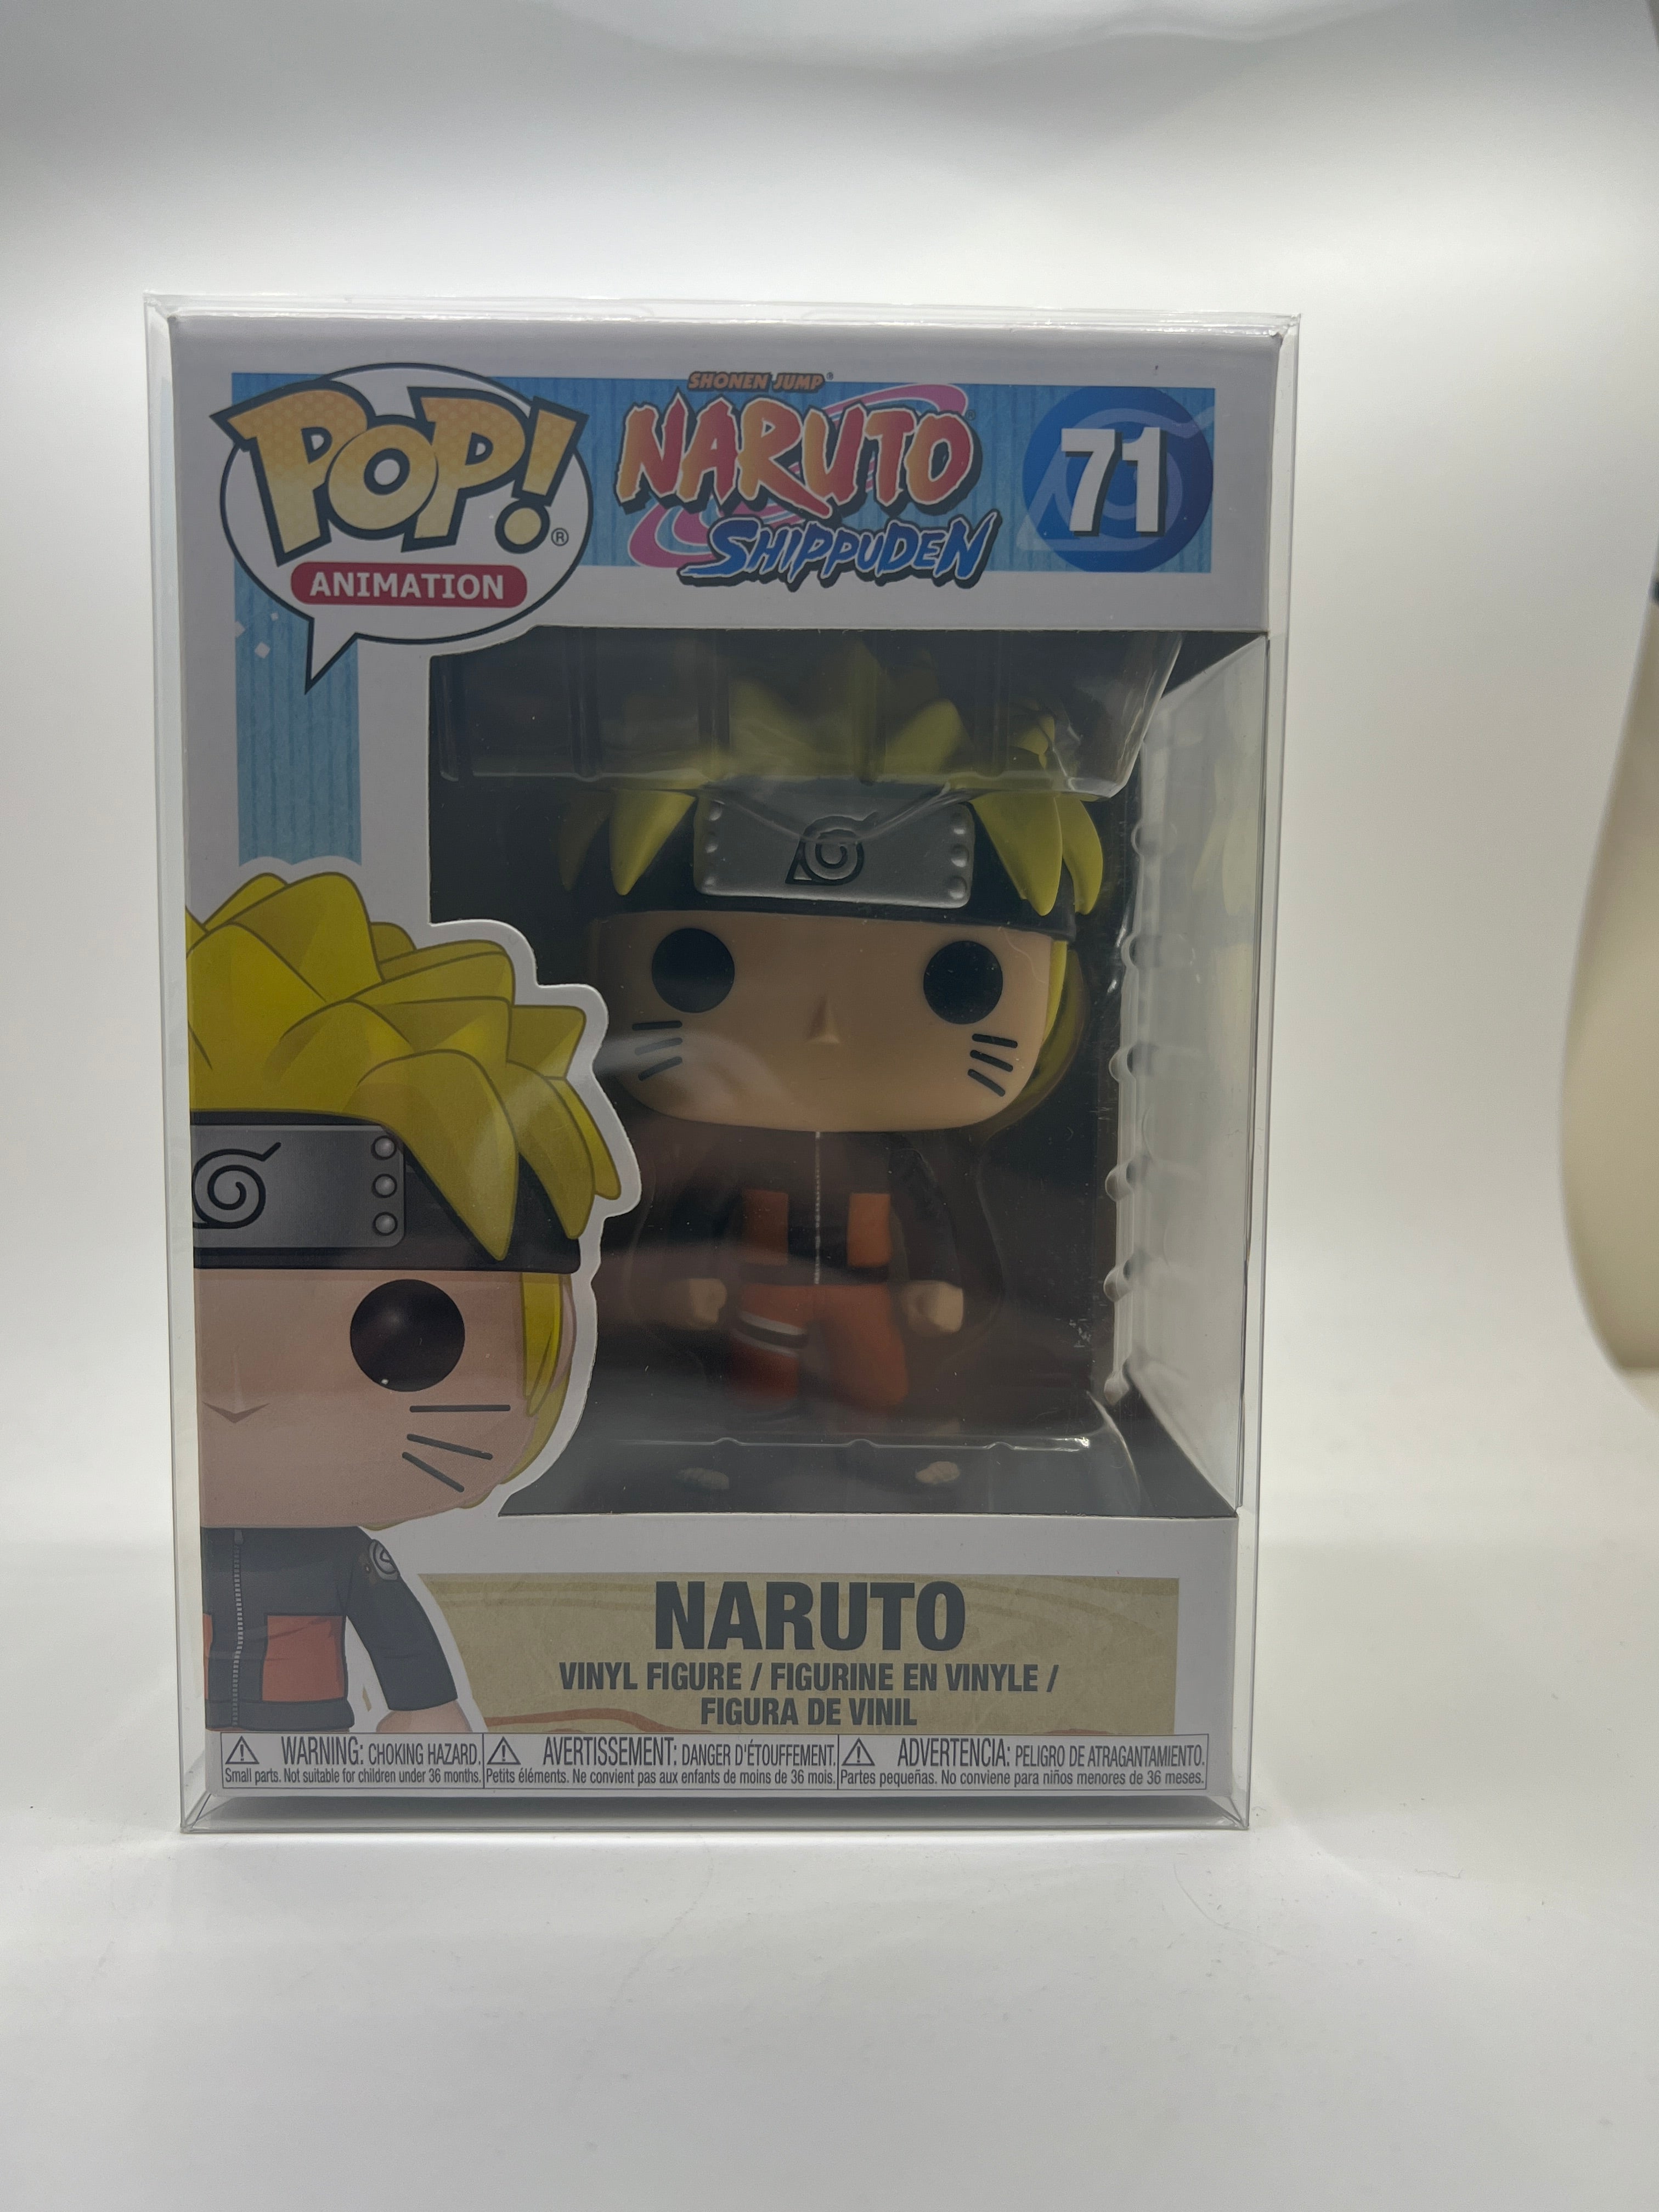 Naruto Funko Pop! Animation: Naruto Shippuden #71